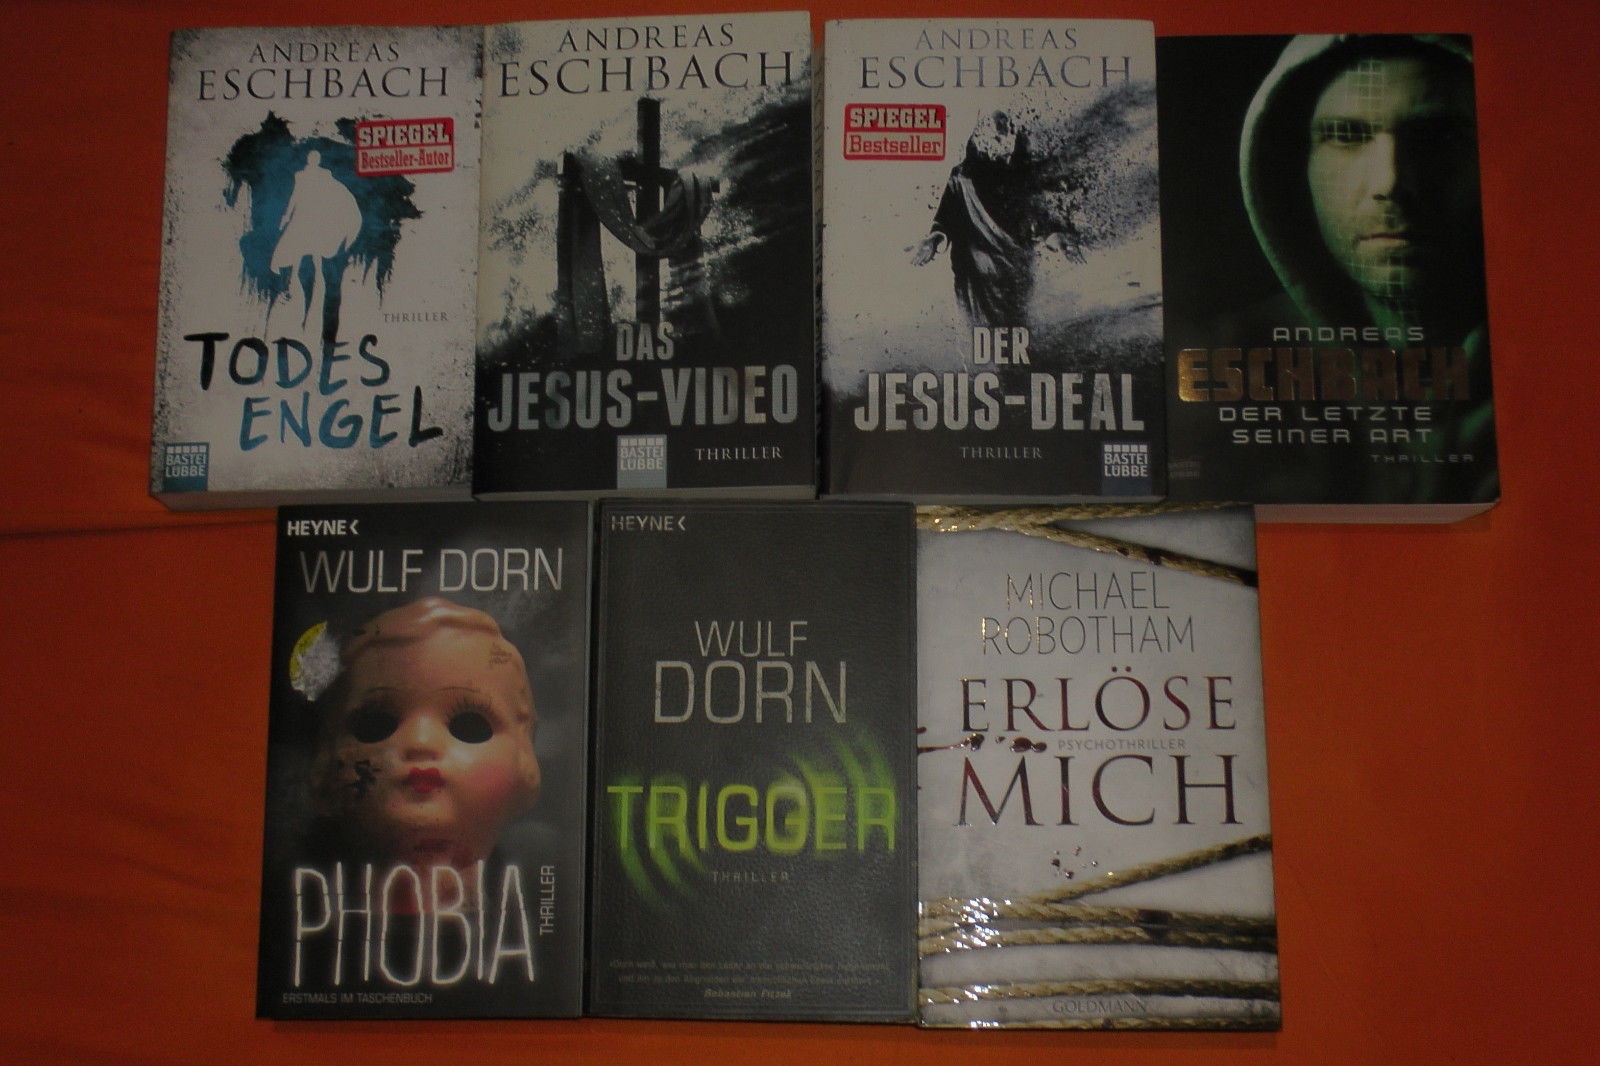 Eschbach, Dorn, Robotham, Todesengel, Trigger, Der Jesus-Deal, Das Jesus-Video